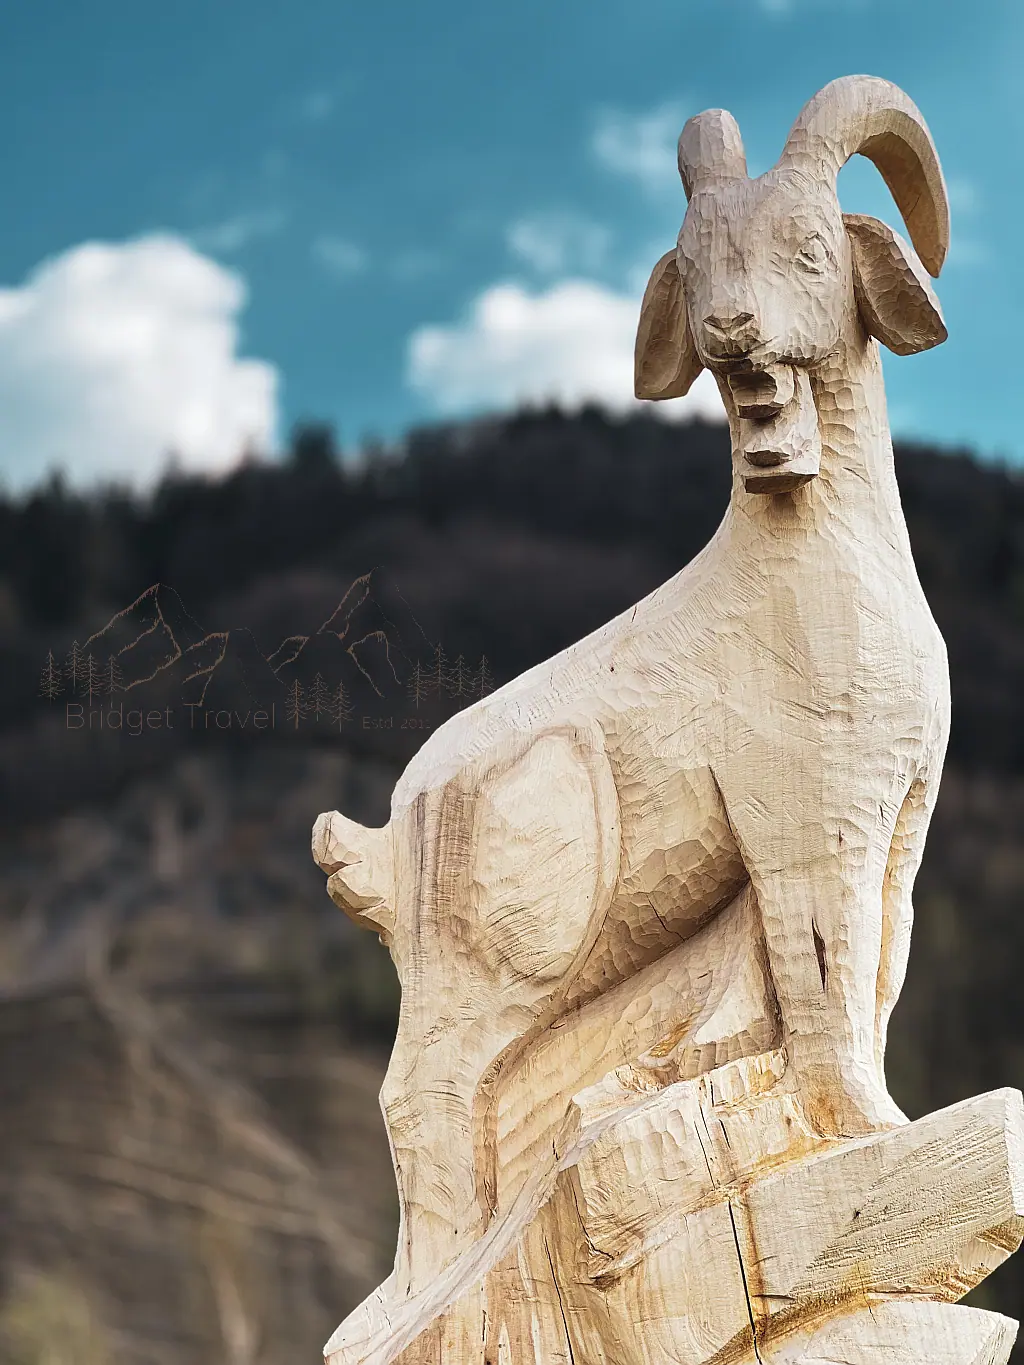 Koza na cokoliku ławeczki transgranicznej w Kamieniołomie w Kozach